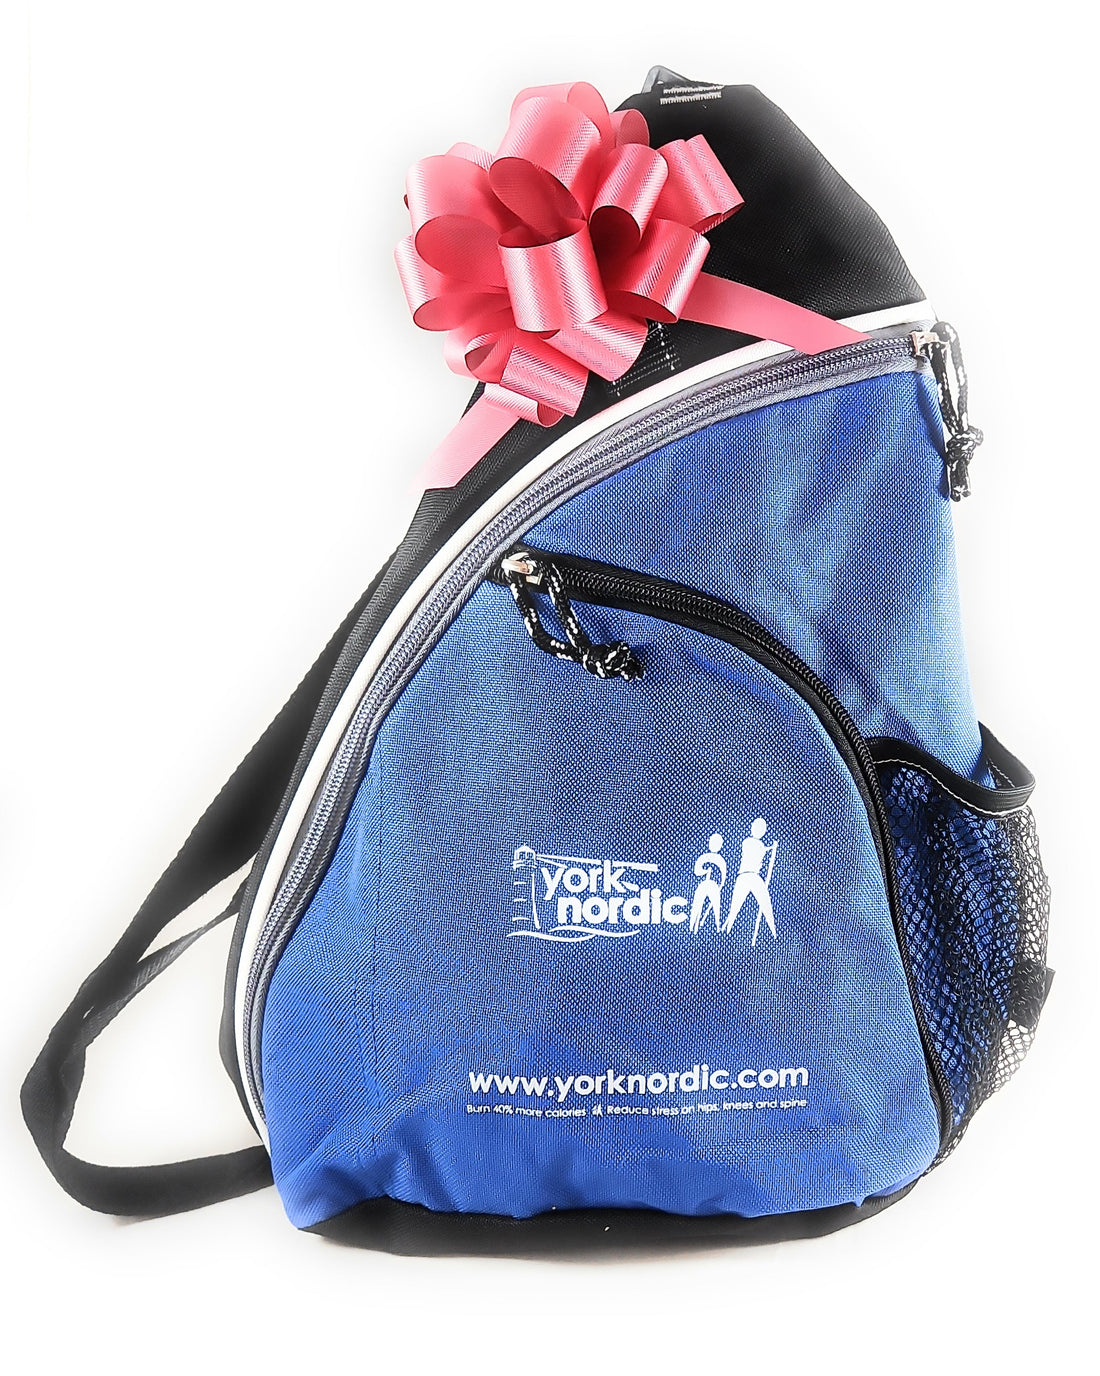 Folding Travel Walking Poles Gift Set - Collapsible Training Videos Water Bottle Pedometer Bag